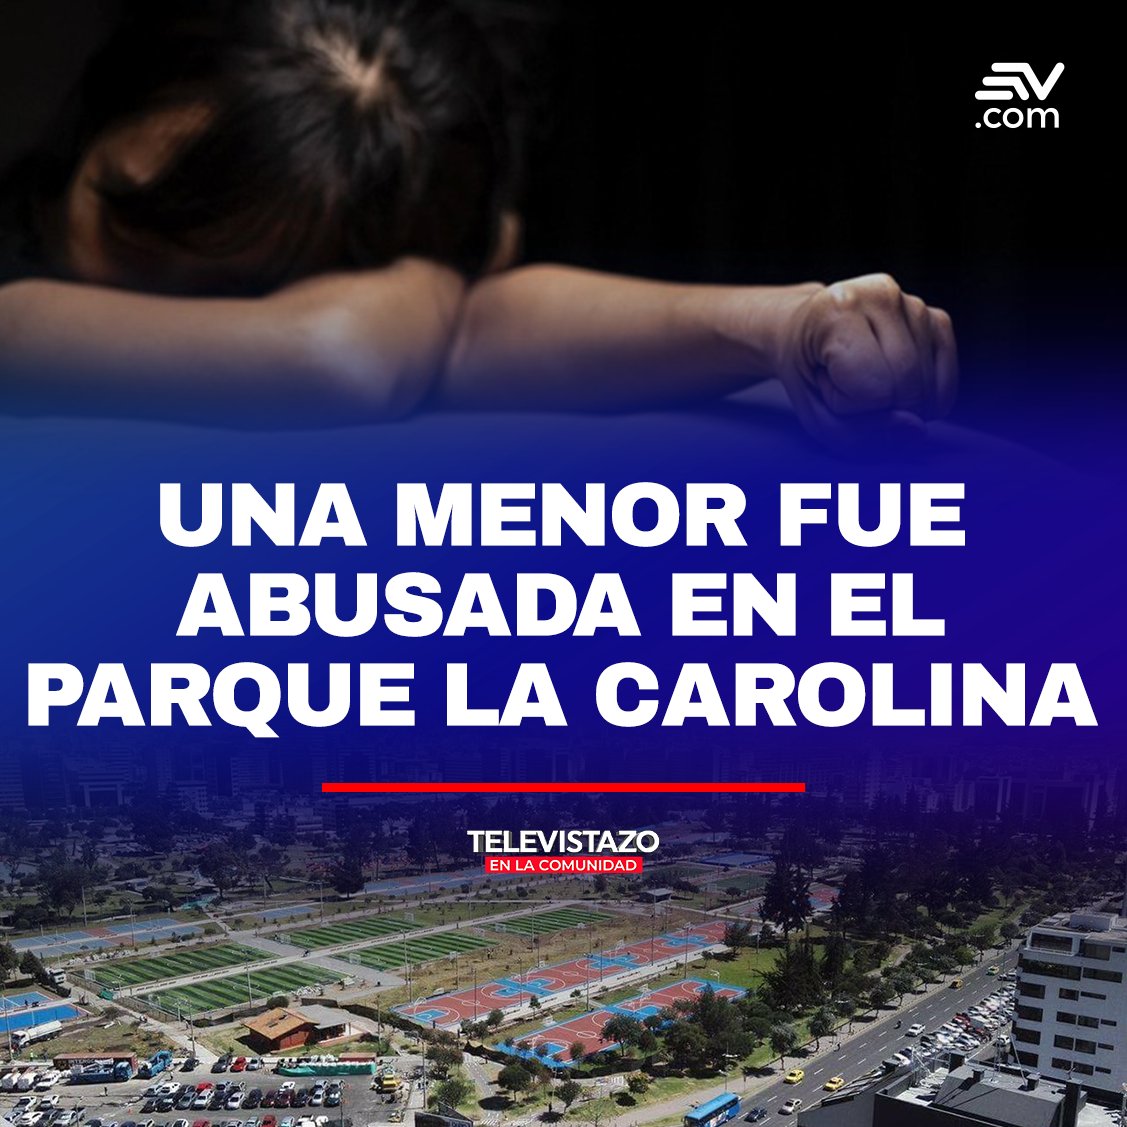 📢 Dos adolescentes son investigados por presuntamente haber abusado sexualmente de una compañera de colegio en el parque La Carolina, en el norte de #Quito ➡ bit.ly/3WOrWLn